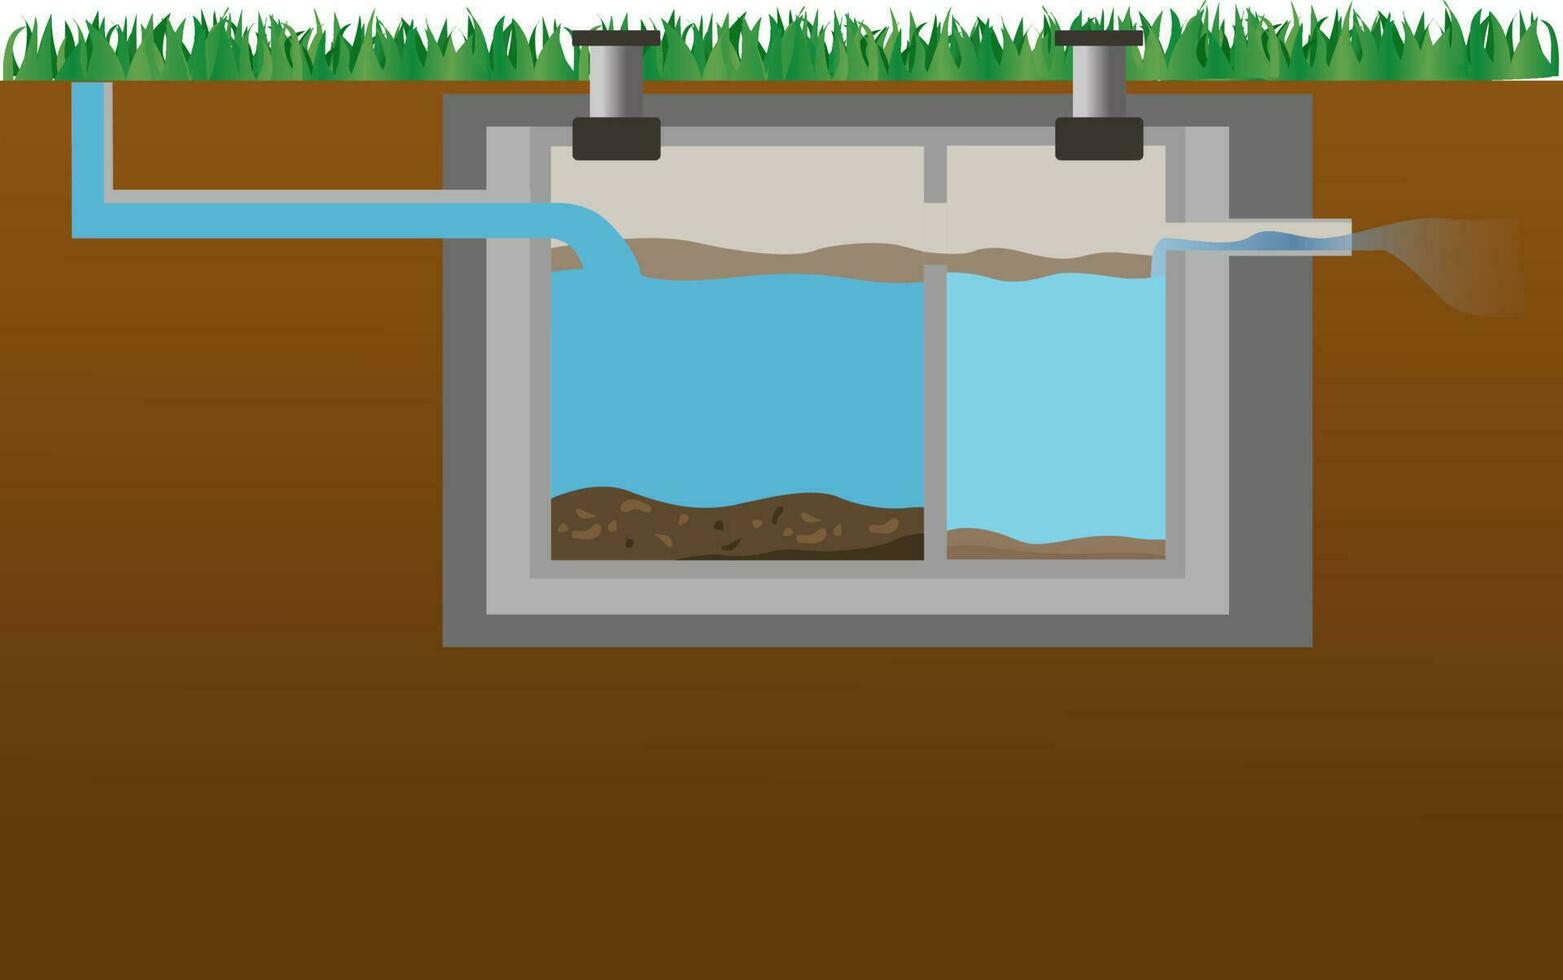 septisch tank diagram vector illustratie, toilet septisch tank systeem illustratie, verspilling water